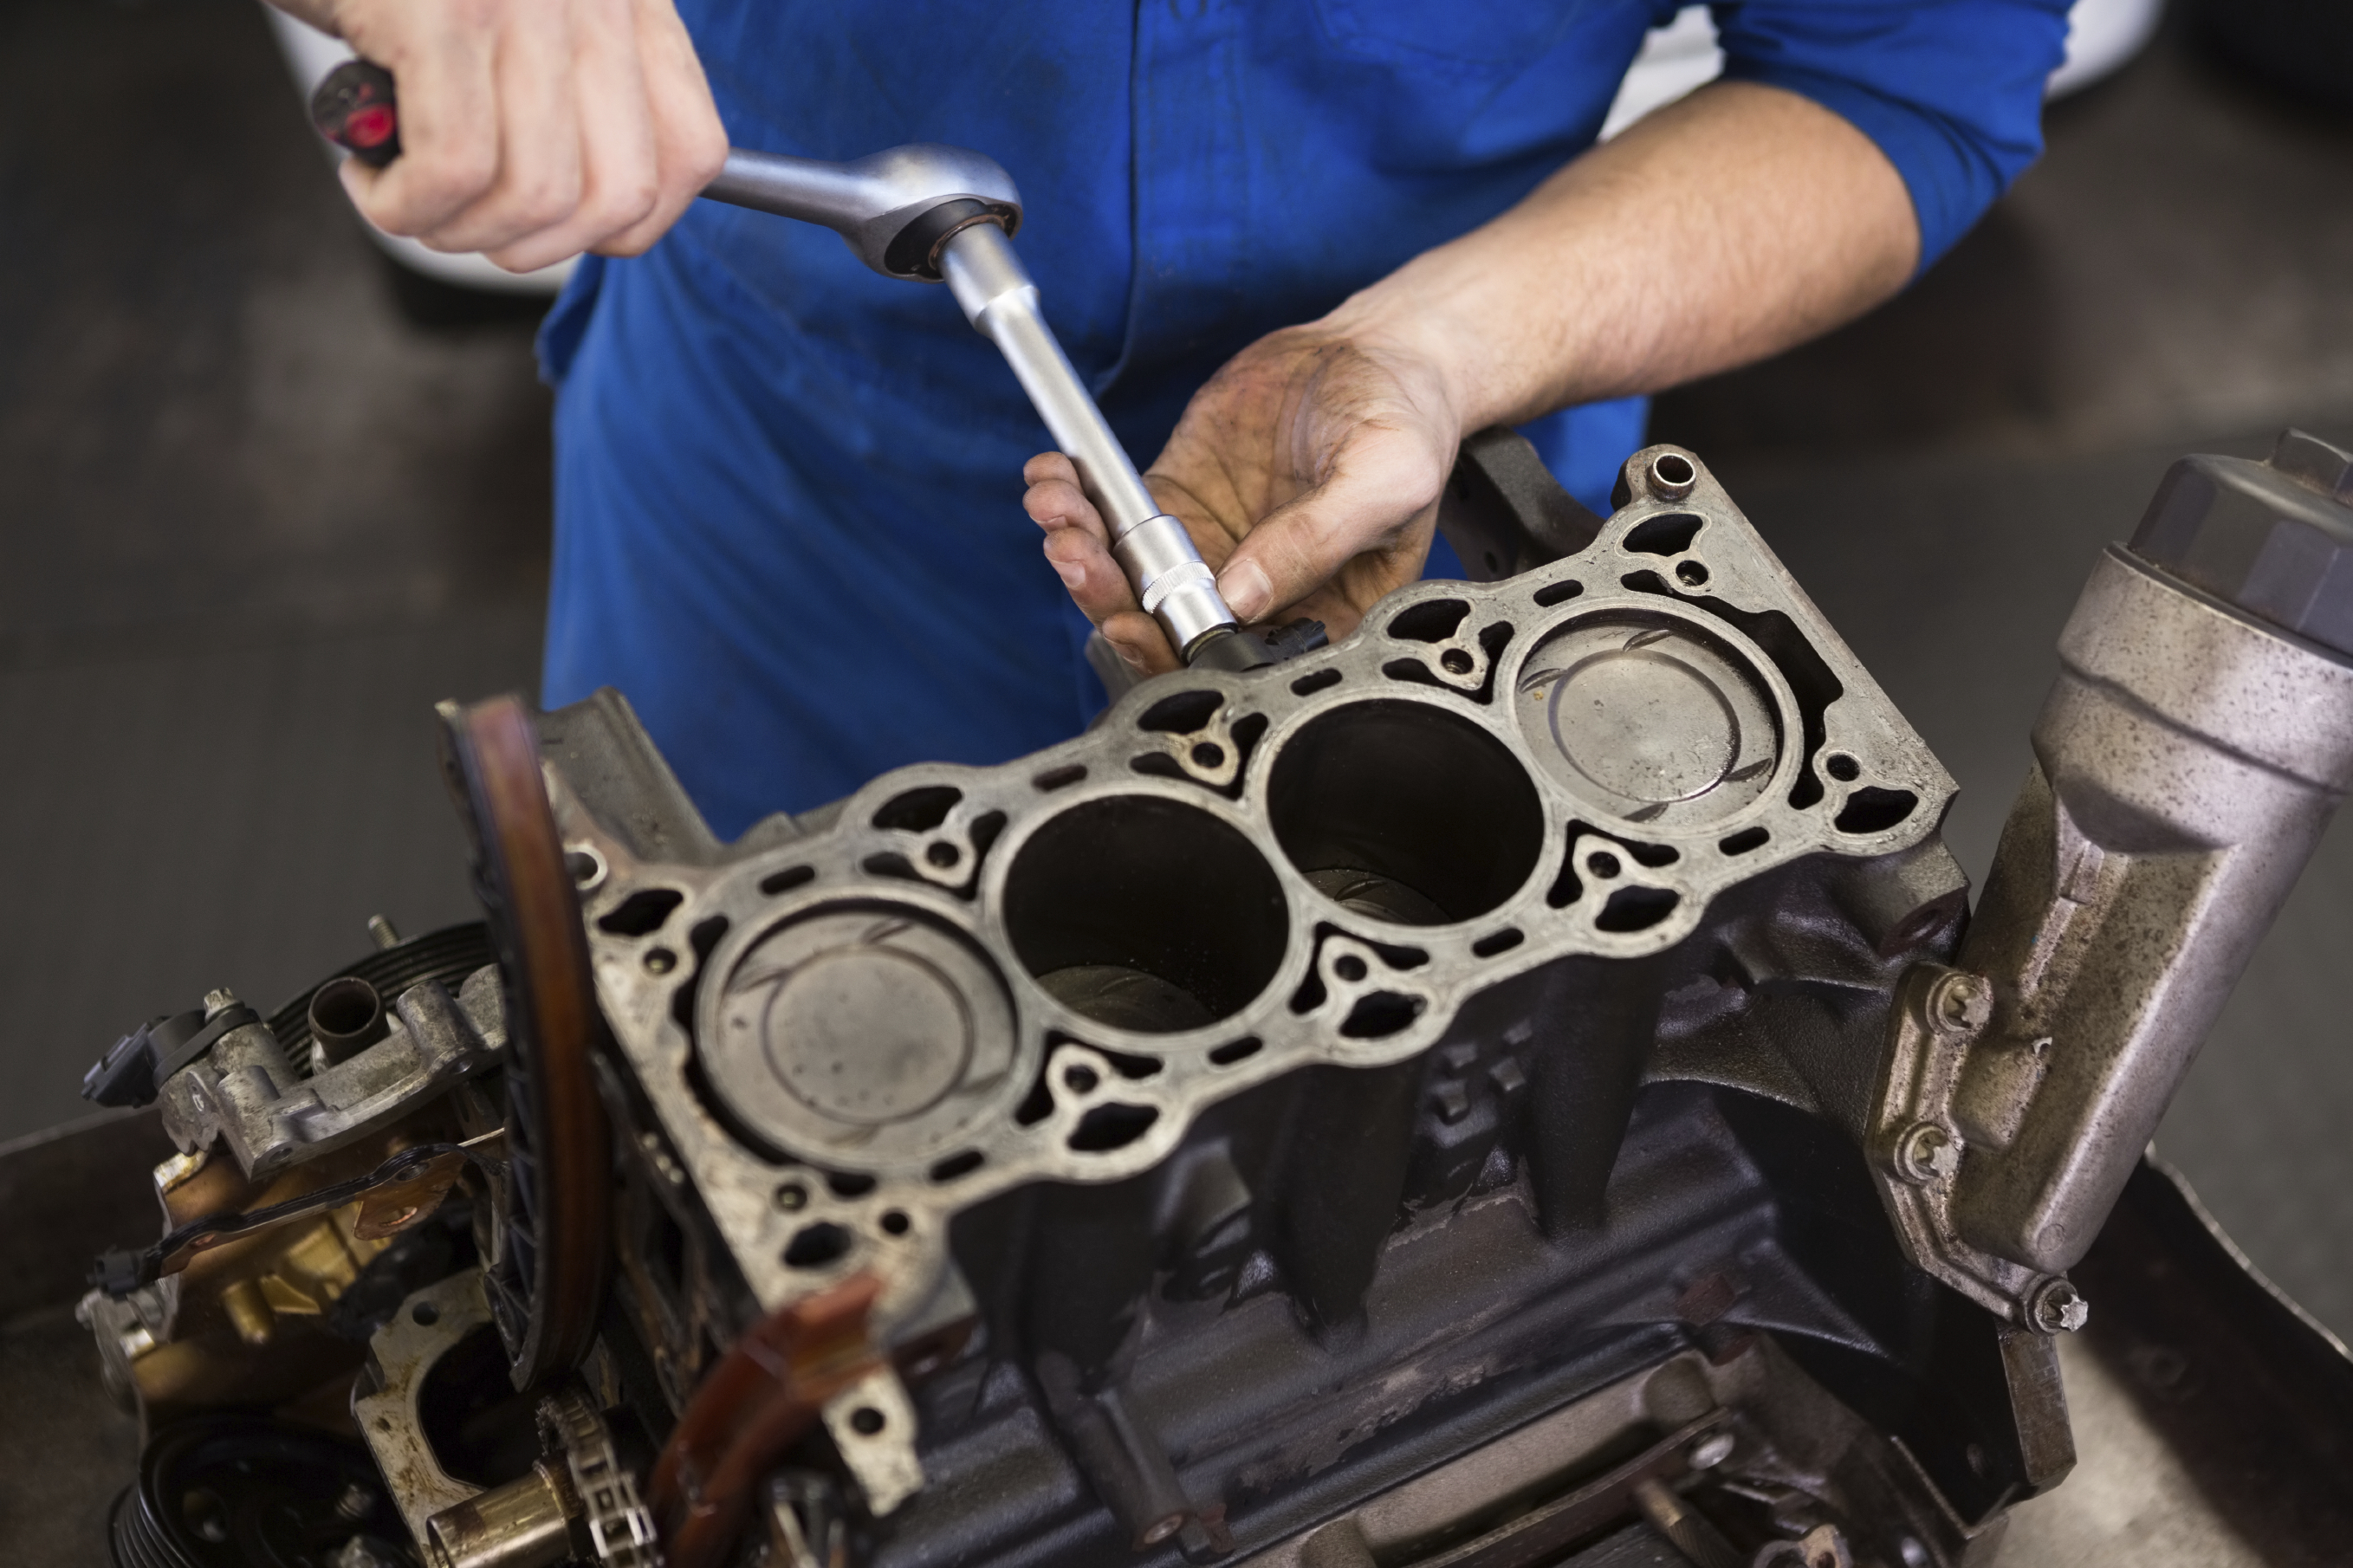 Как сделать правильный капитальный ремонт двигателя, чтобы он был лучше нового